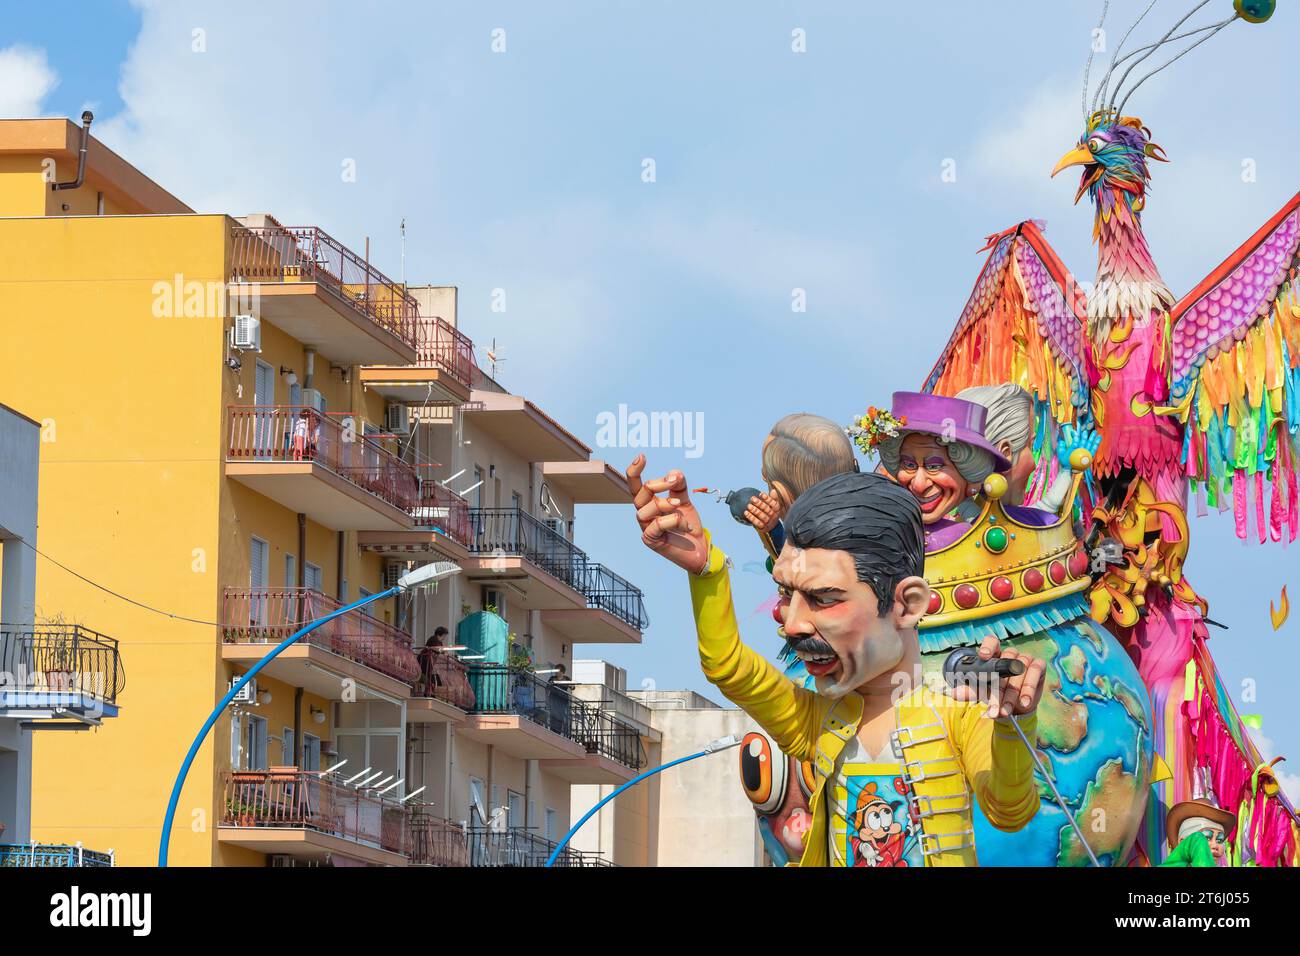 Flotteur de carnaval, Sciacca, district d'Agrigente, Sicile, Italie Banque D'Images